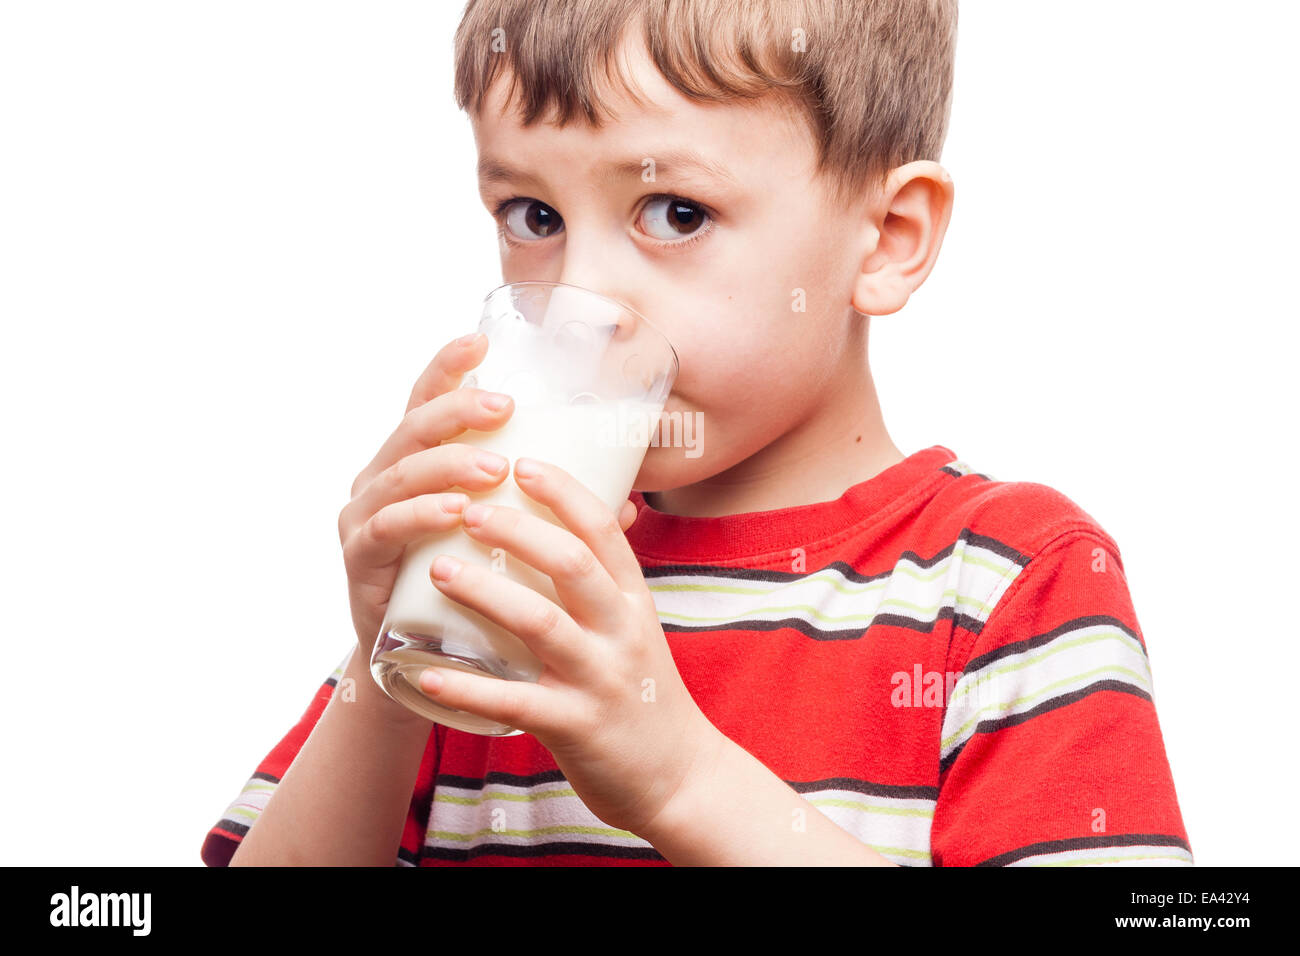 Пьет молоко на английском. Мальчик с молоком. Мальчик пьет молоко картинка. Человек пьет молоко на прозрачном фоне. Мальчик пьет молоко картина.